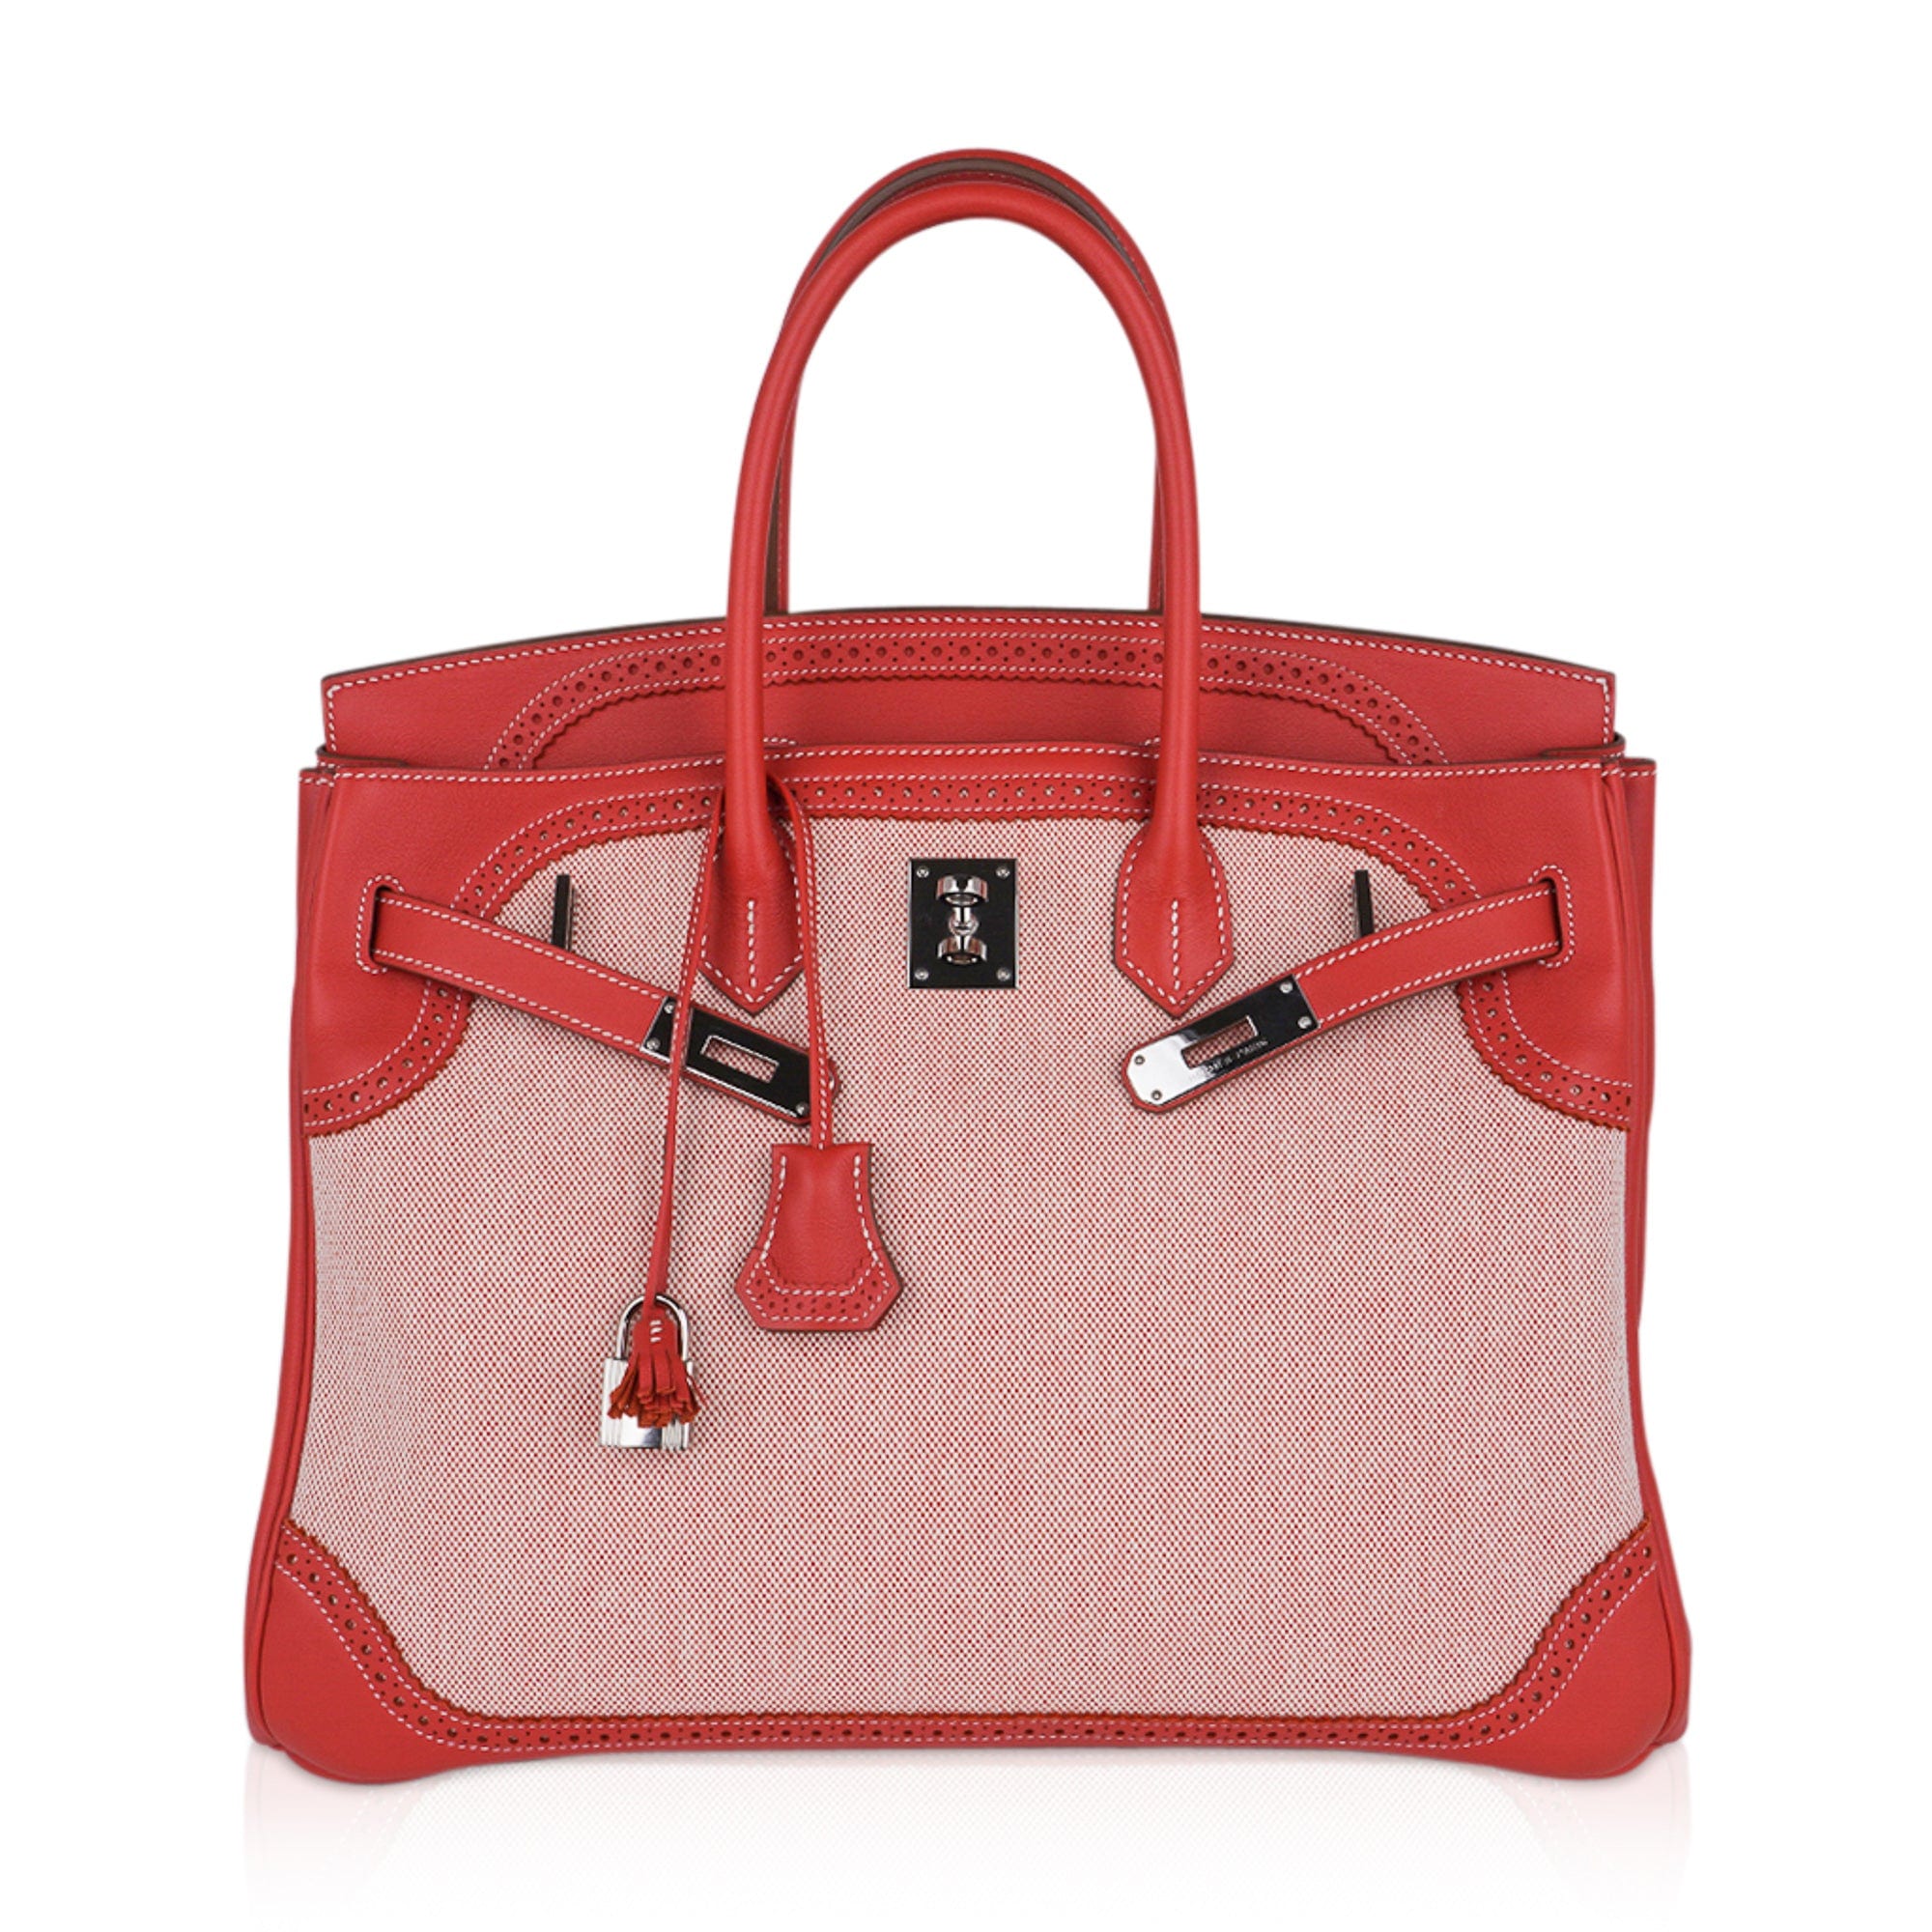 Hermes Bolide 35 cm Handbag in Etoupe Swift Leather